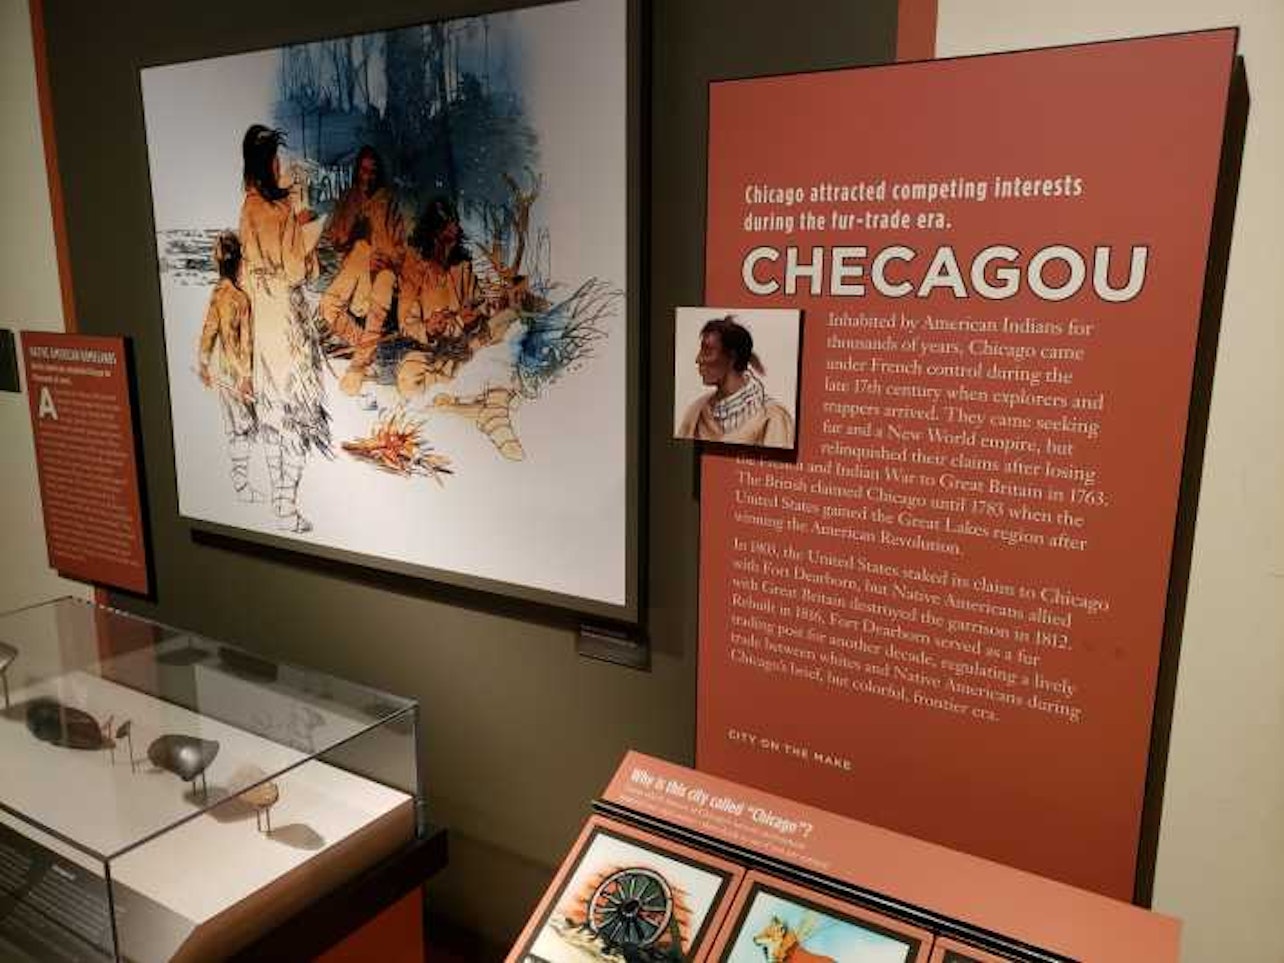 Ingresso de Admissão ao Museu de História de Chicago - Acomodações em Chicago